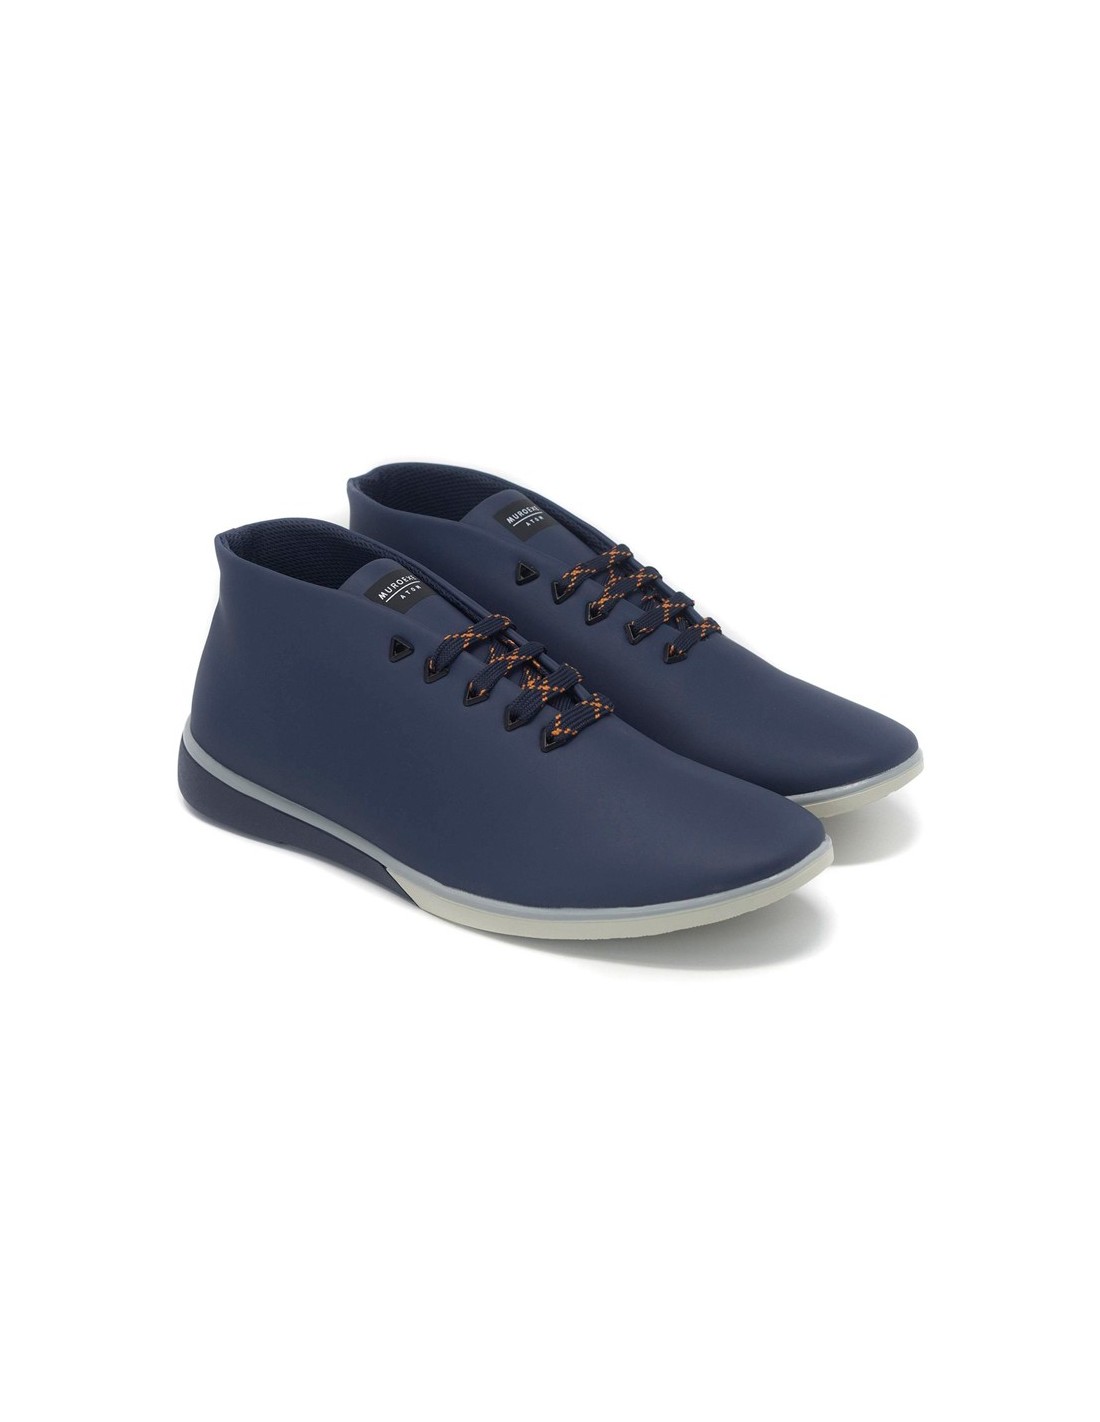 Muroexe Atom Mist Shoes Blue